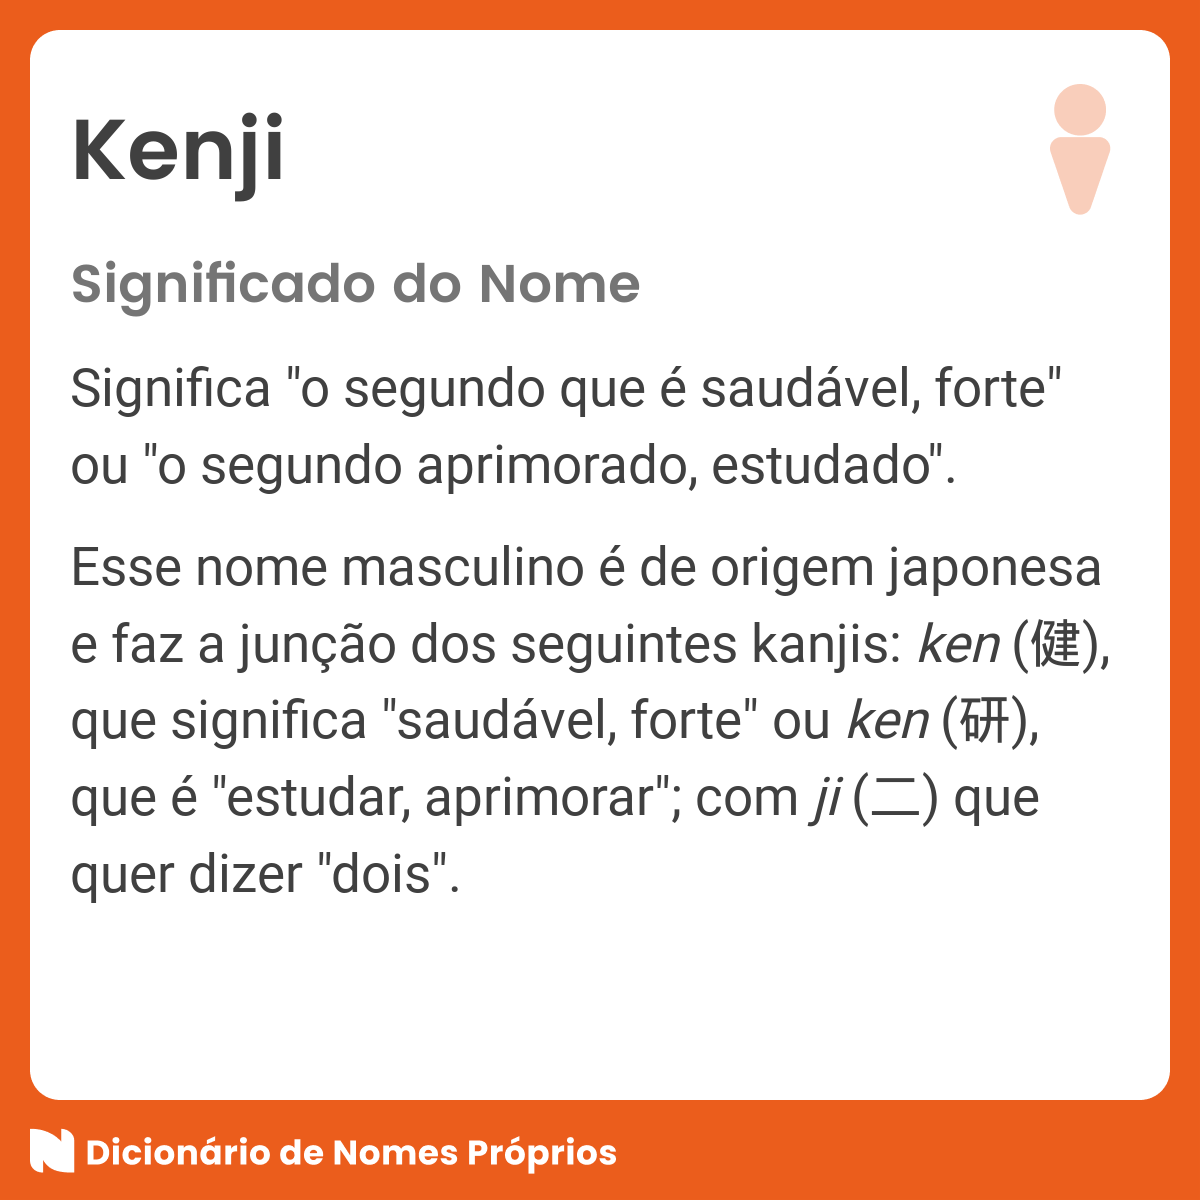 Significado do nome Kenji - Dicionário de Nomes Próprios